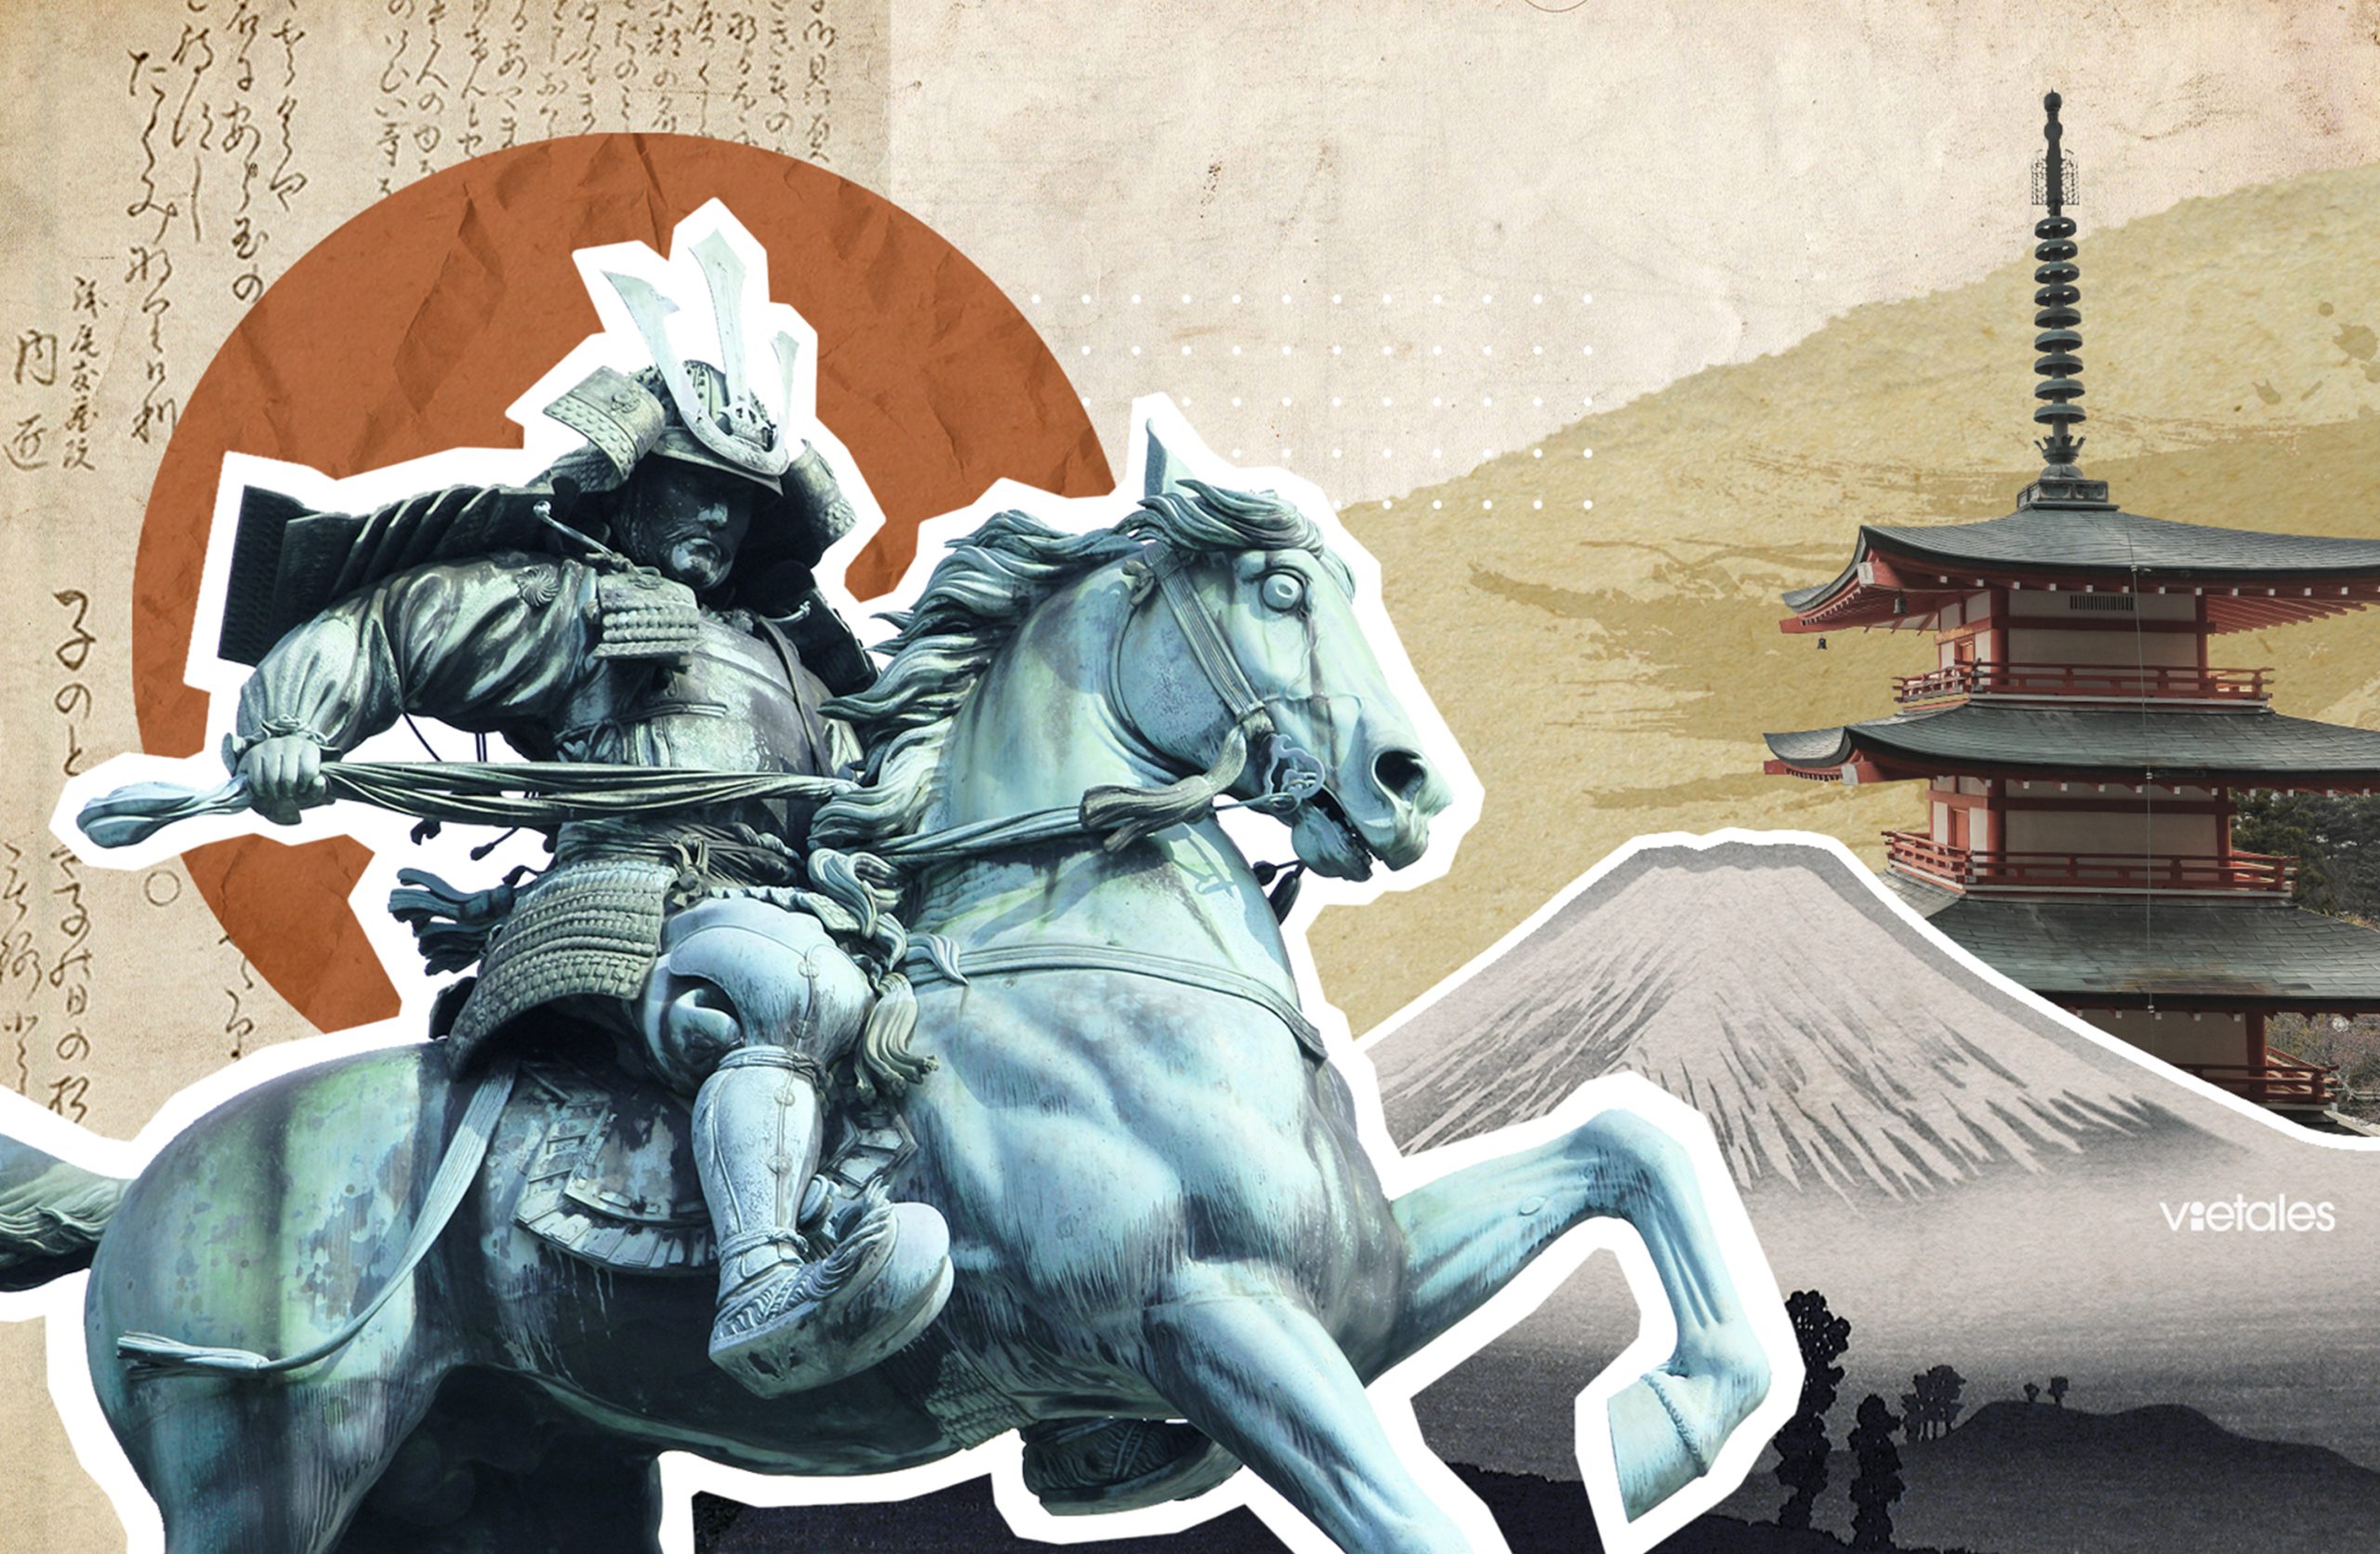 Samurai trên phim ảnh và thực tế khác nhau cỡ nào?